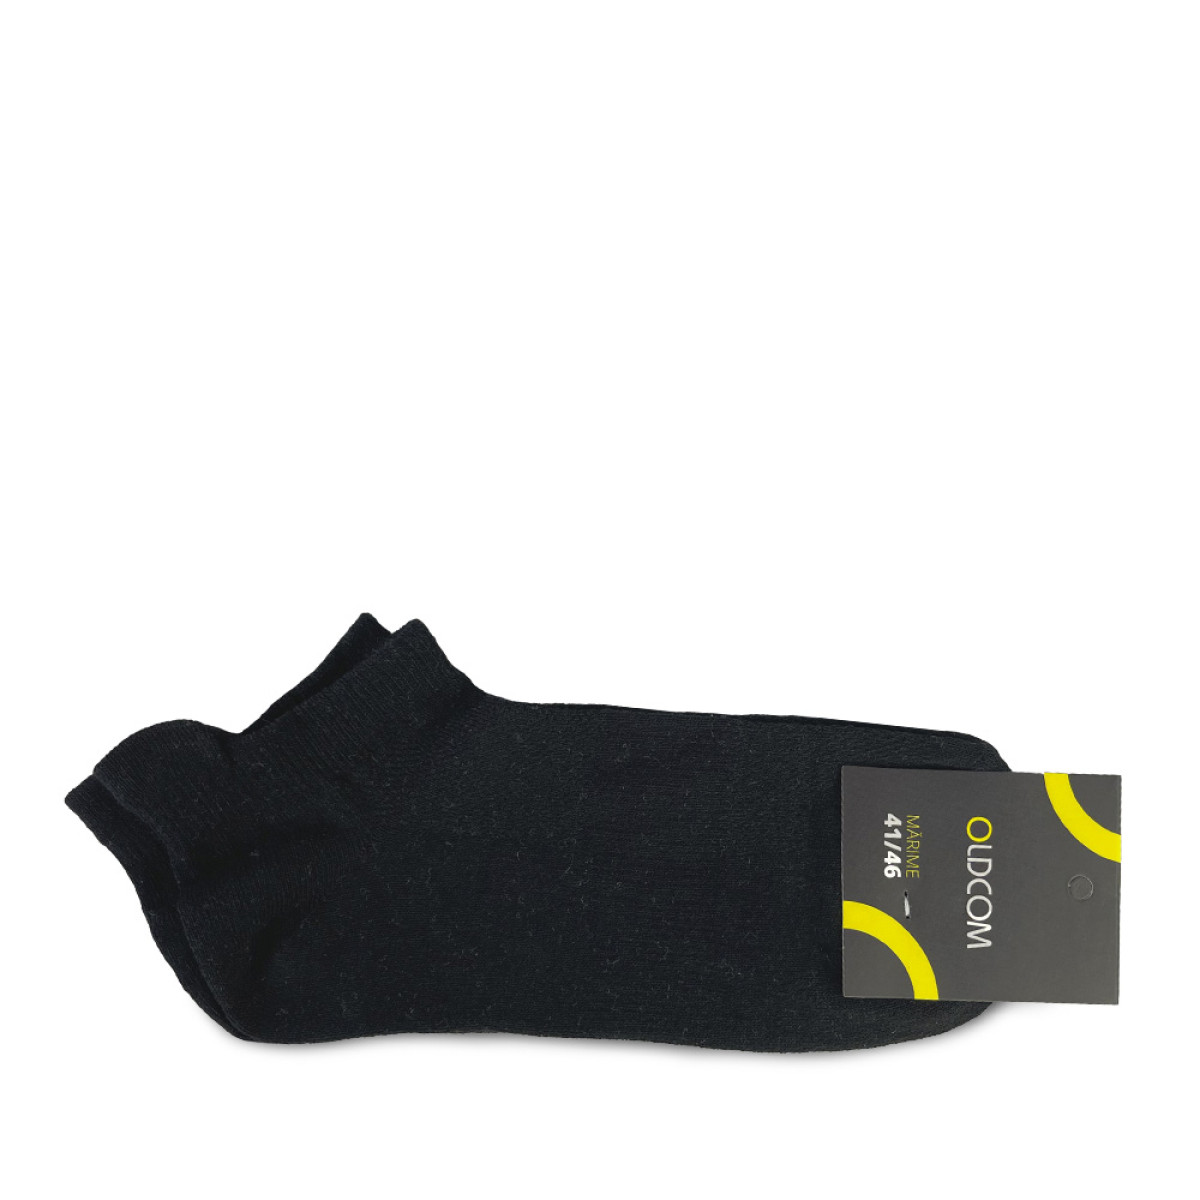 Socks AIR Elastic, Black